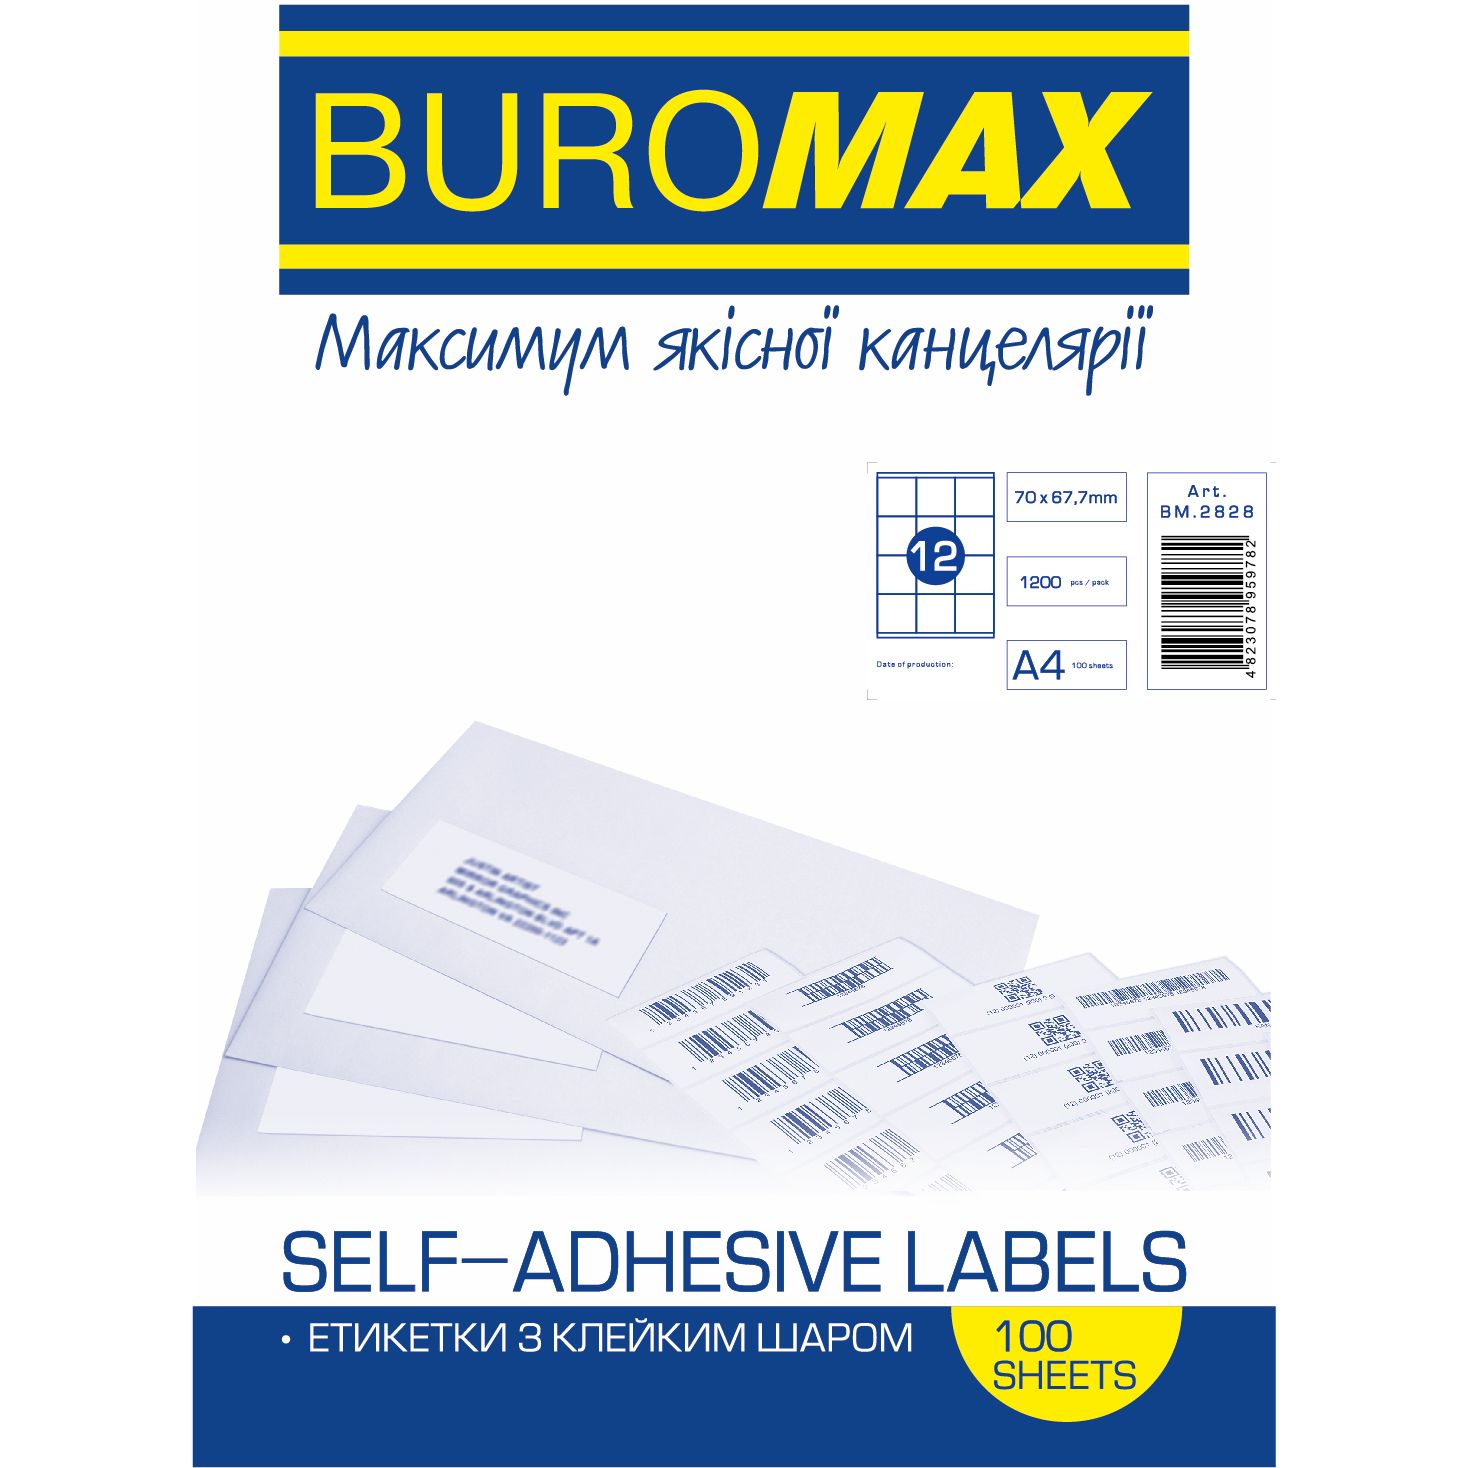 Етикетки самоклейні Buromax 70х67.7 мм 100 шт. (BM.2828) - фото 1